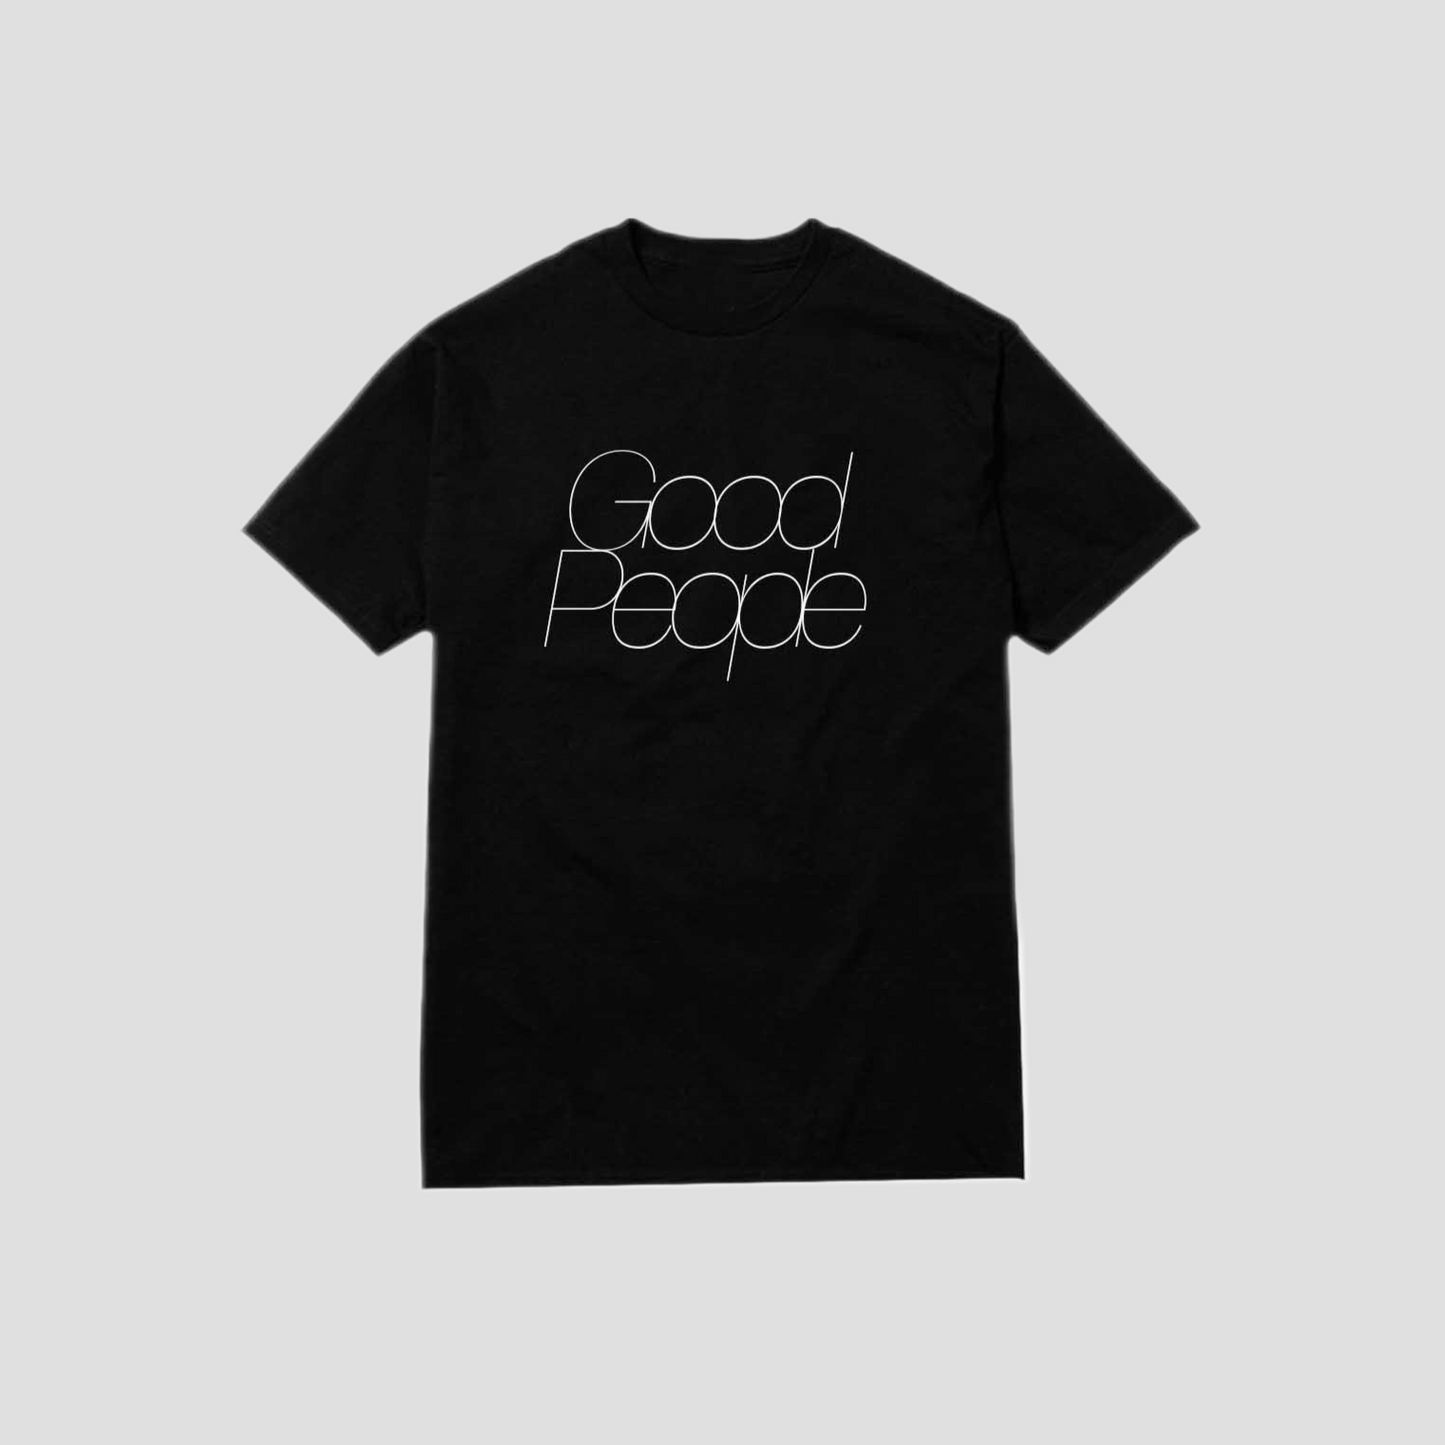 Good People Tee - Black